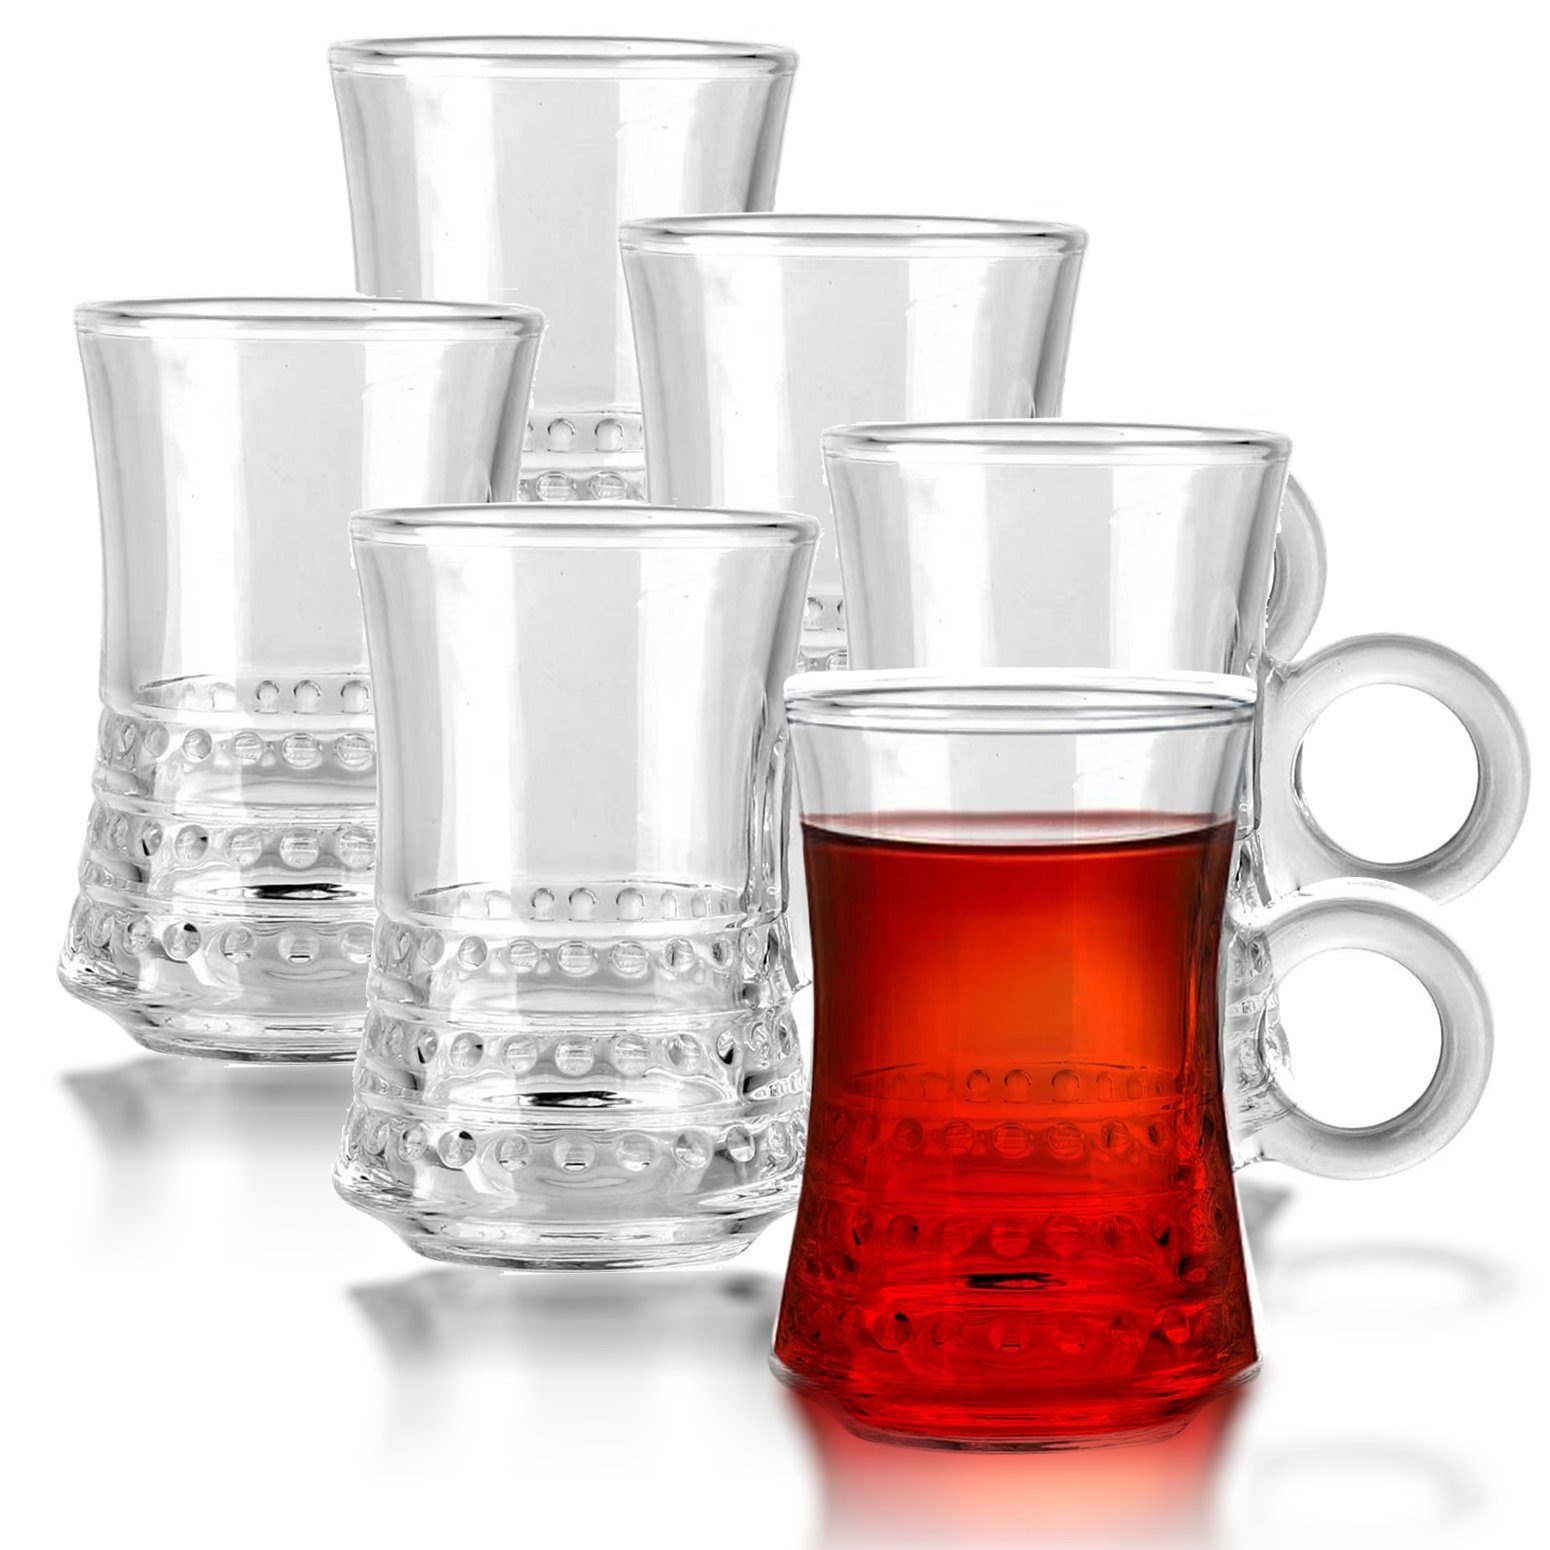 Fiora Teeglas Teeglas mit Henkel Espresso Glas Türkische Teegläser für Warm und Kalt Getränke, 6 teilig